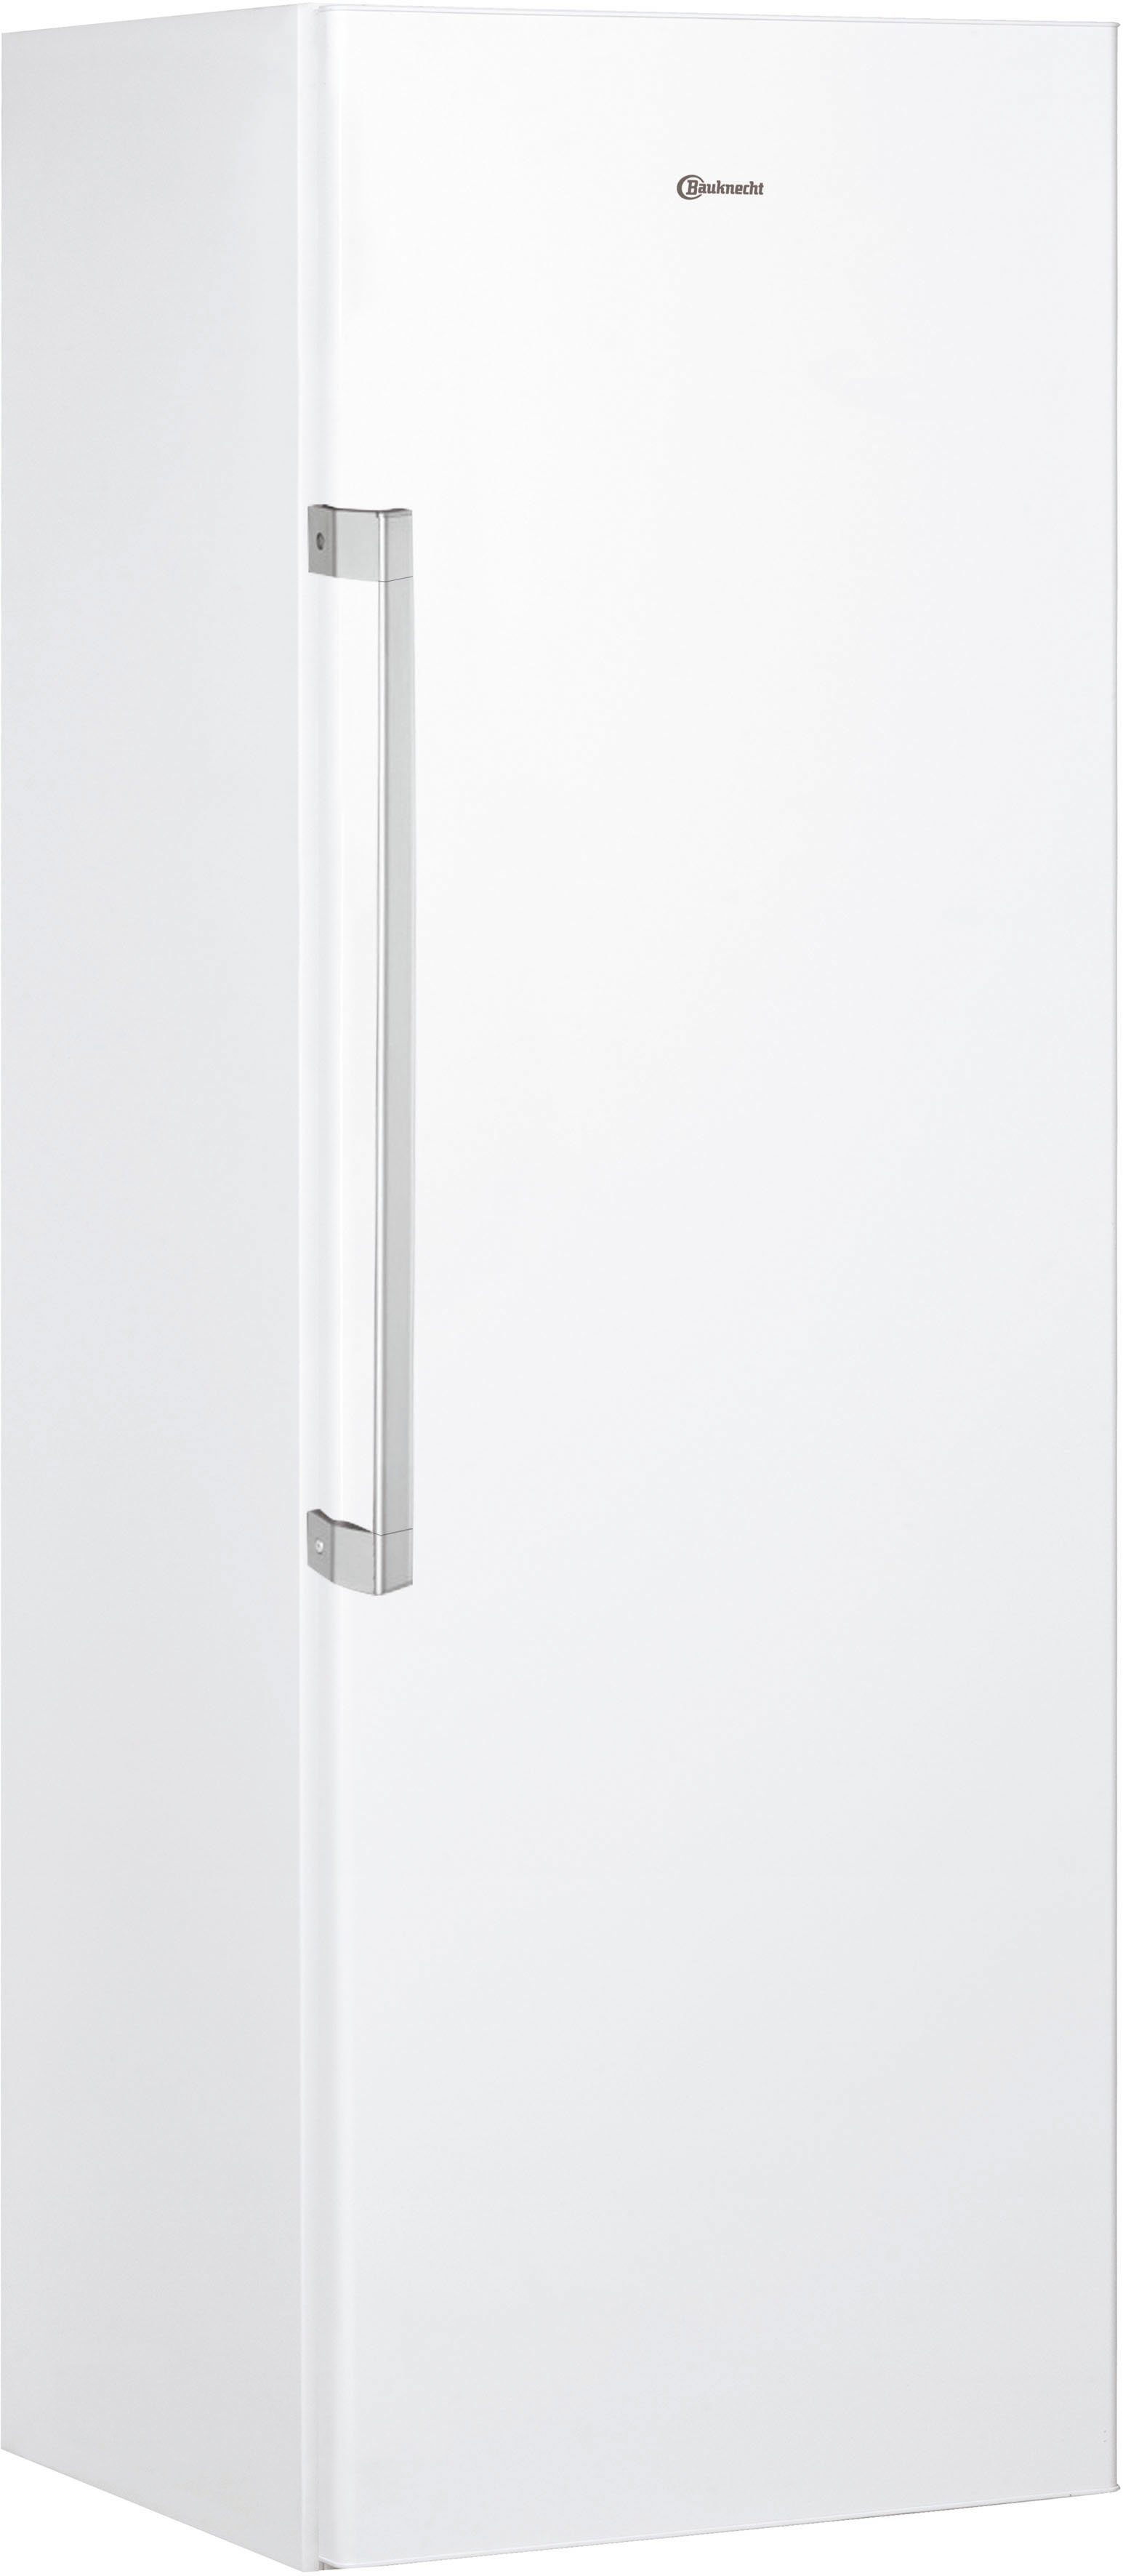 BAUKNECHT Kühlschrank KR 19G3 WS 2, 187,5 cm hoch, 59,5 cm breit online  kaufen | OTTO